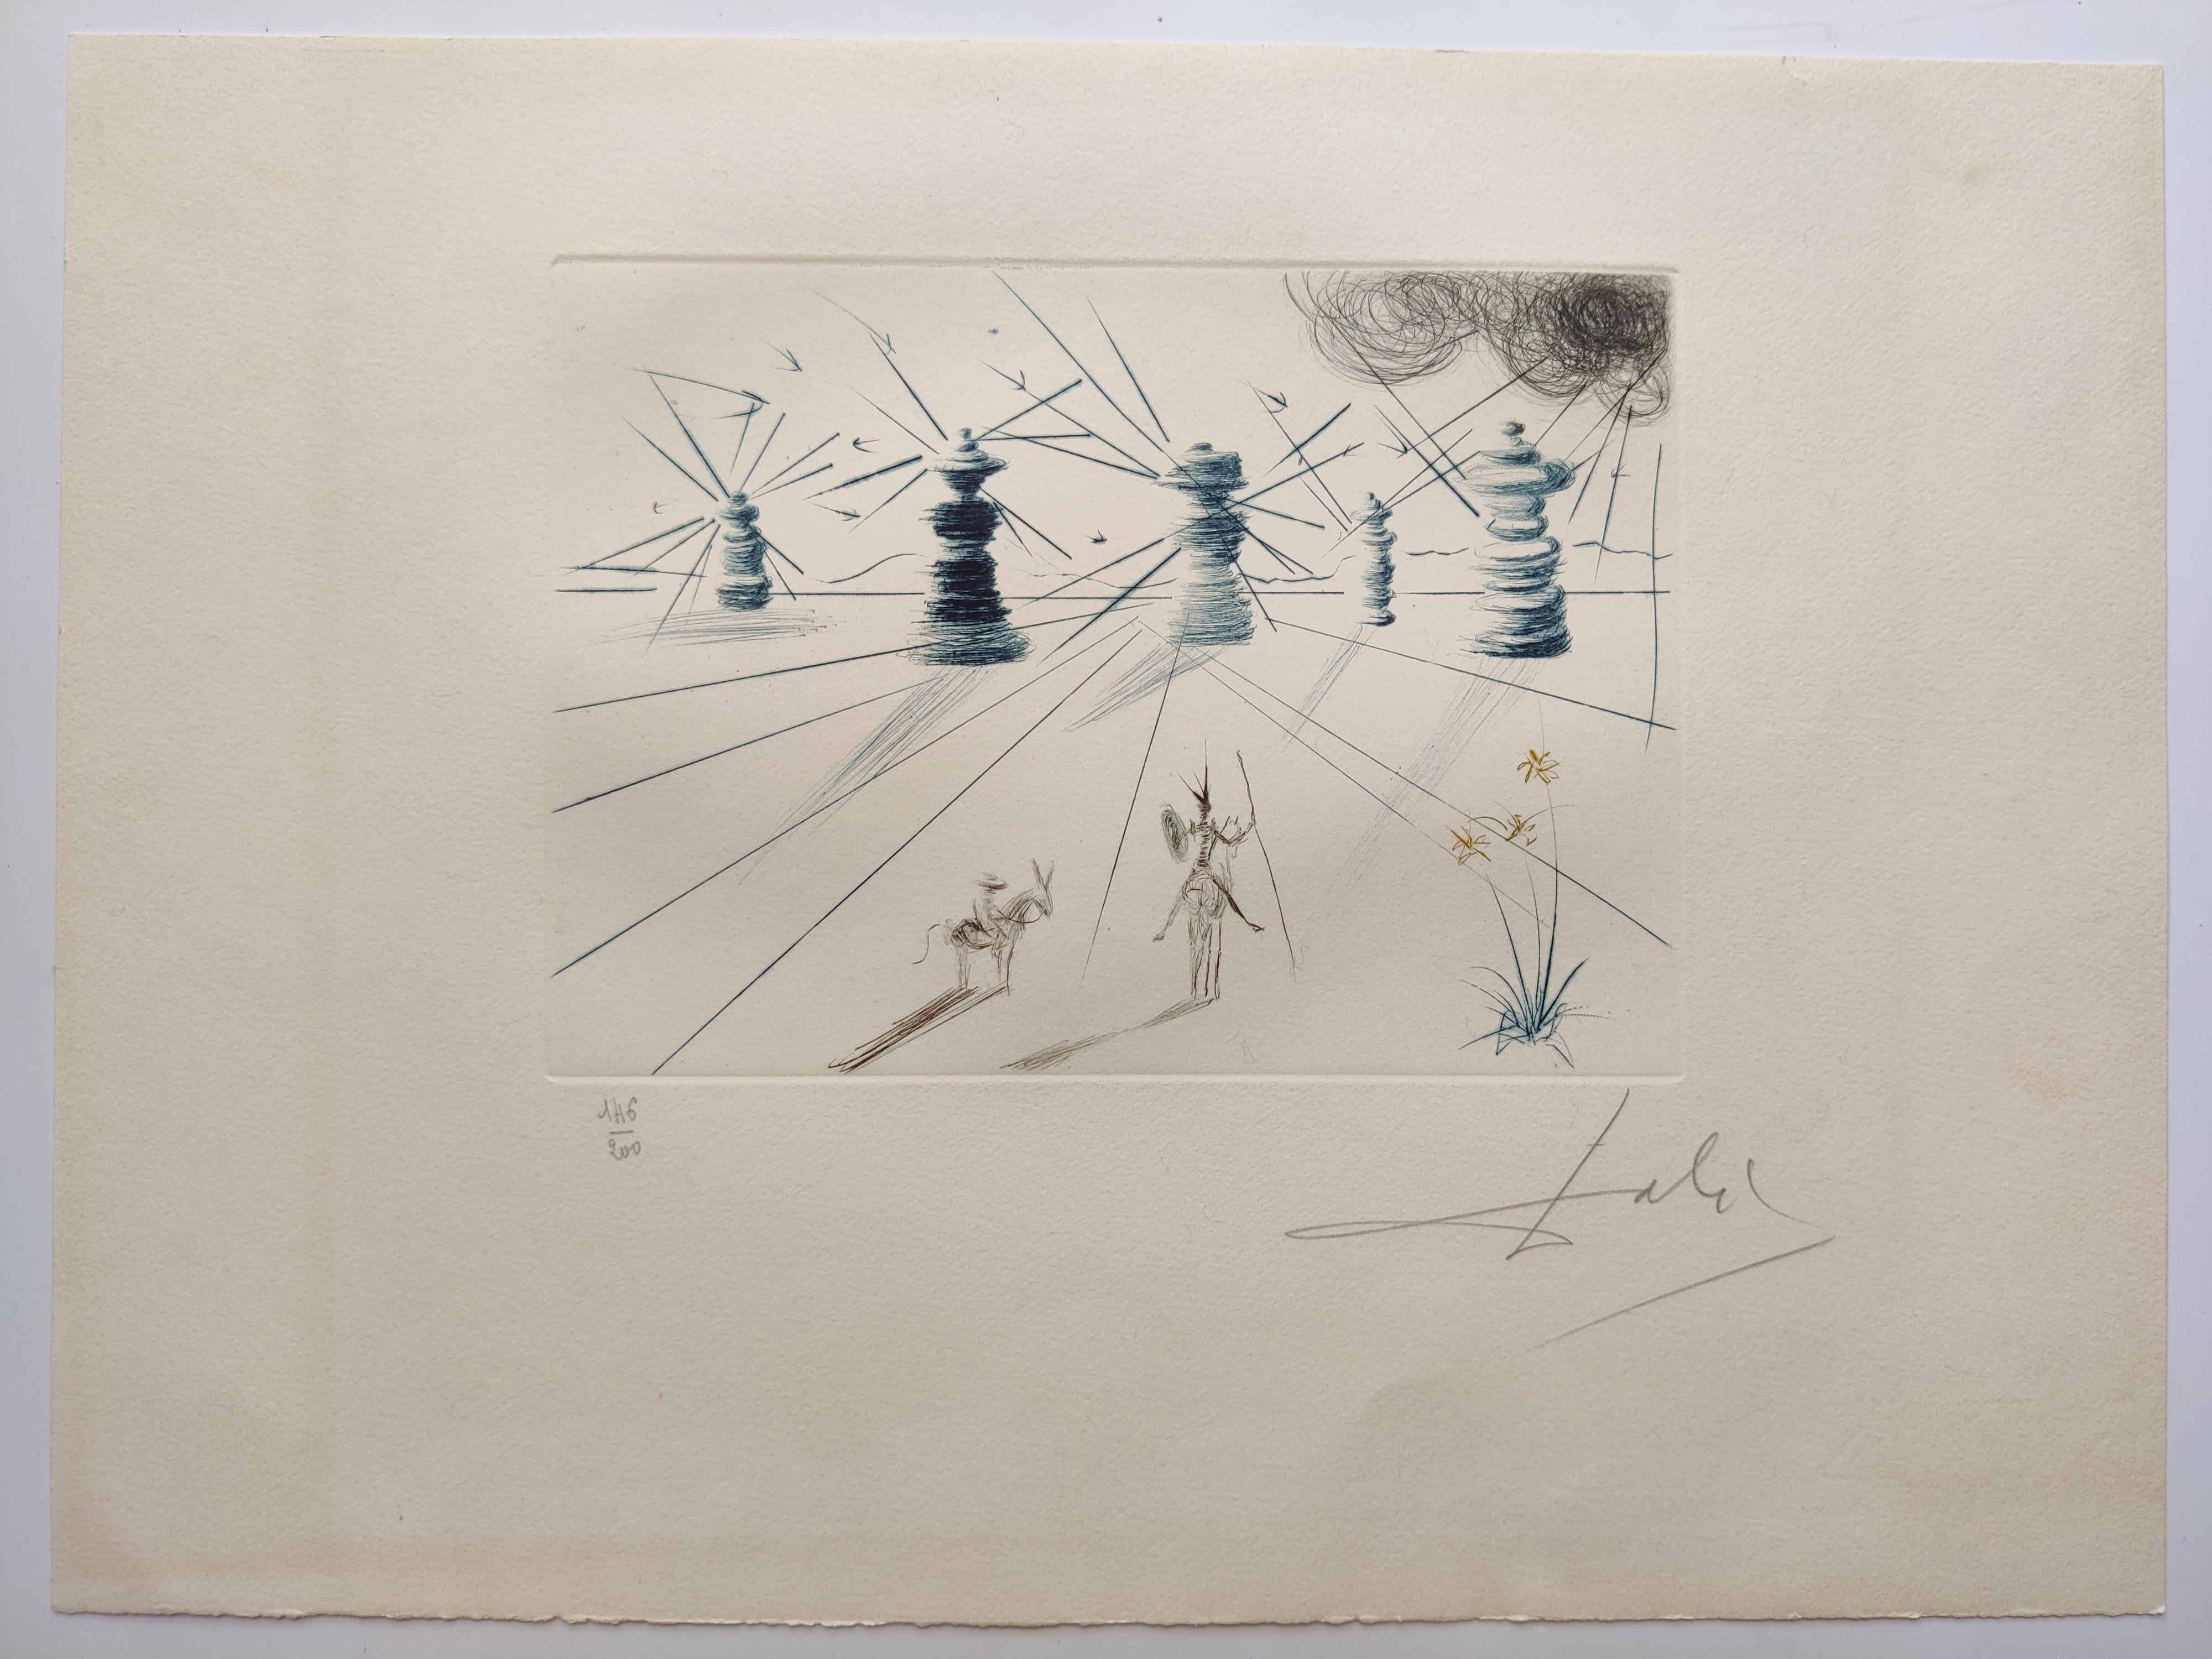 Salvador Dali 
Don Quichotte et Les Moulins à Vent, 1969
Gravure à la pointe sèche en couleurs sur vélin BFK Rives
Signé à la main et numéroté 146 / 200 au crayon
Taille de la feuille 39,5 x 29,5 cm
Taille de l'image 21 x 15 cm
Imprimé par les